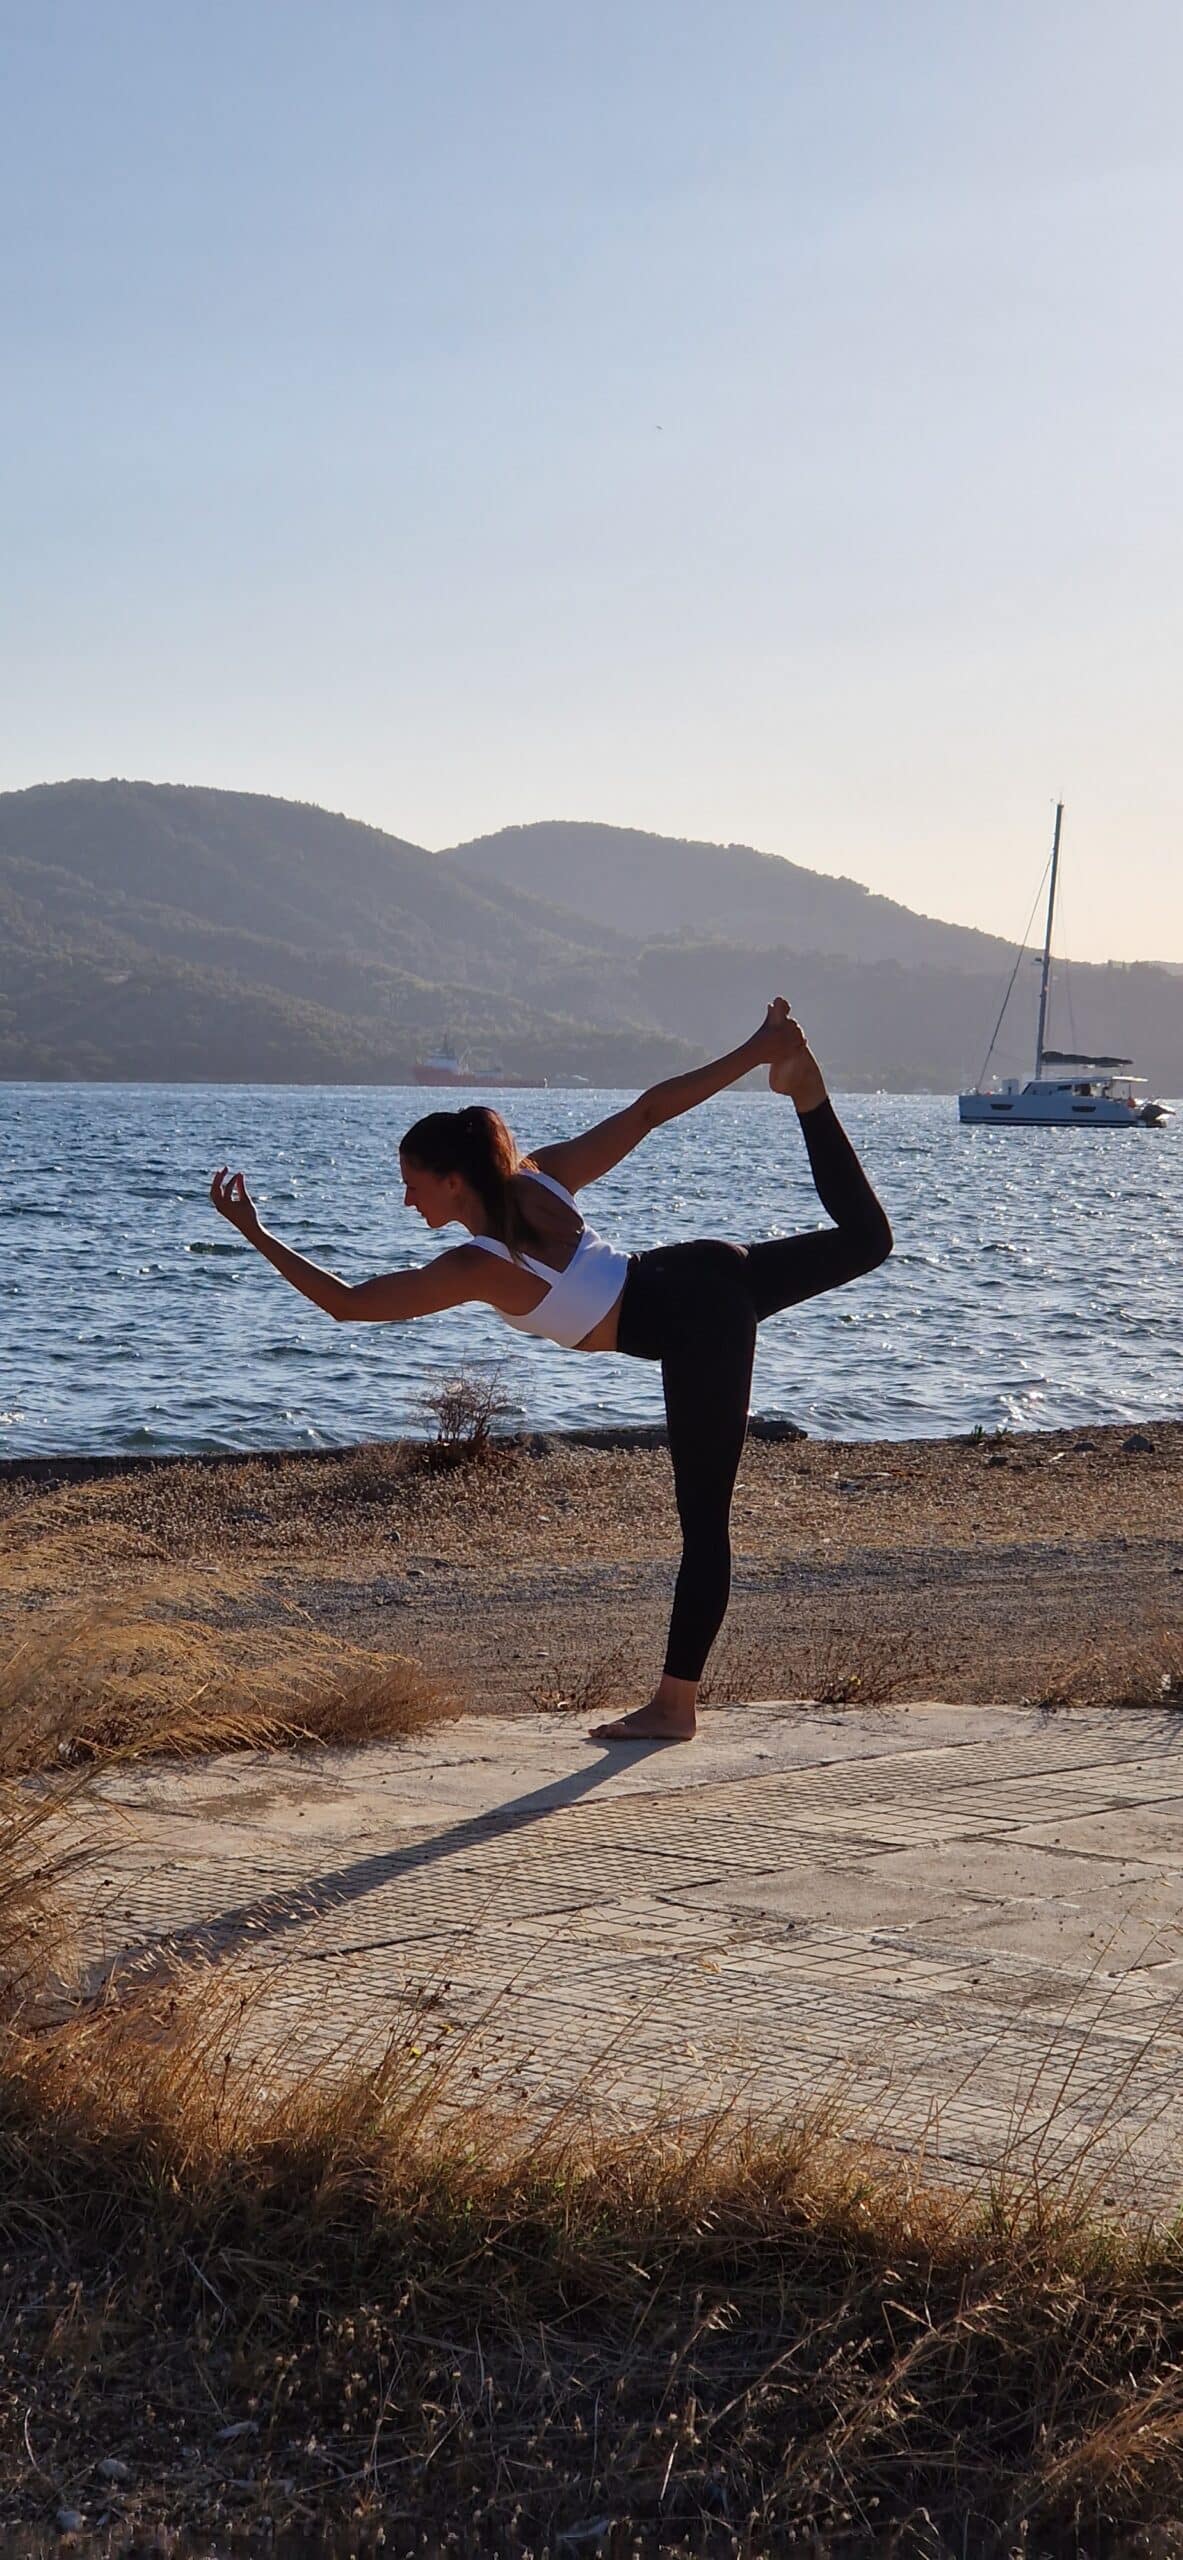 Eine Frau übt eine fortgeschrittene Yoga-Pose auf einer Betonplatte neben einem ruhigen Gewässer, mit Hügeln und einem Segelboot im Hintergrund. Inmitten ihrer anmutigen Balance kann man sich leicht vorstellen, man sei auf einem Segelurlaub und würde die gleiche Ruhe spüren, die sie verkörpert.